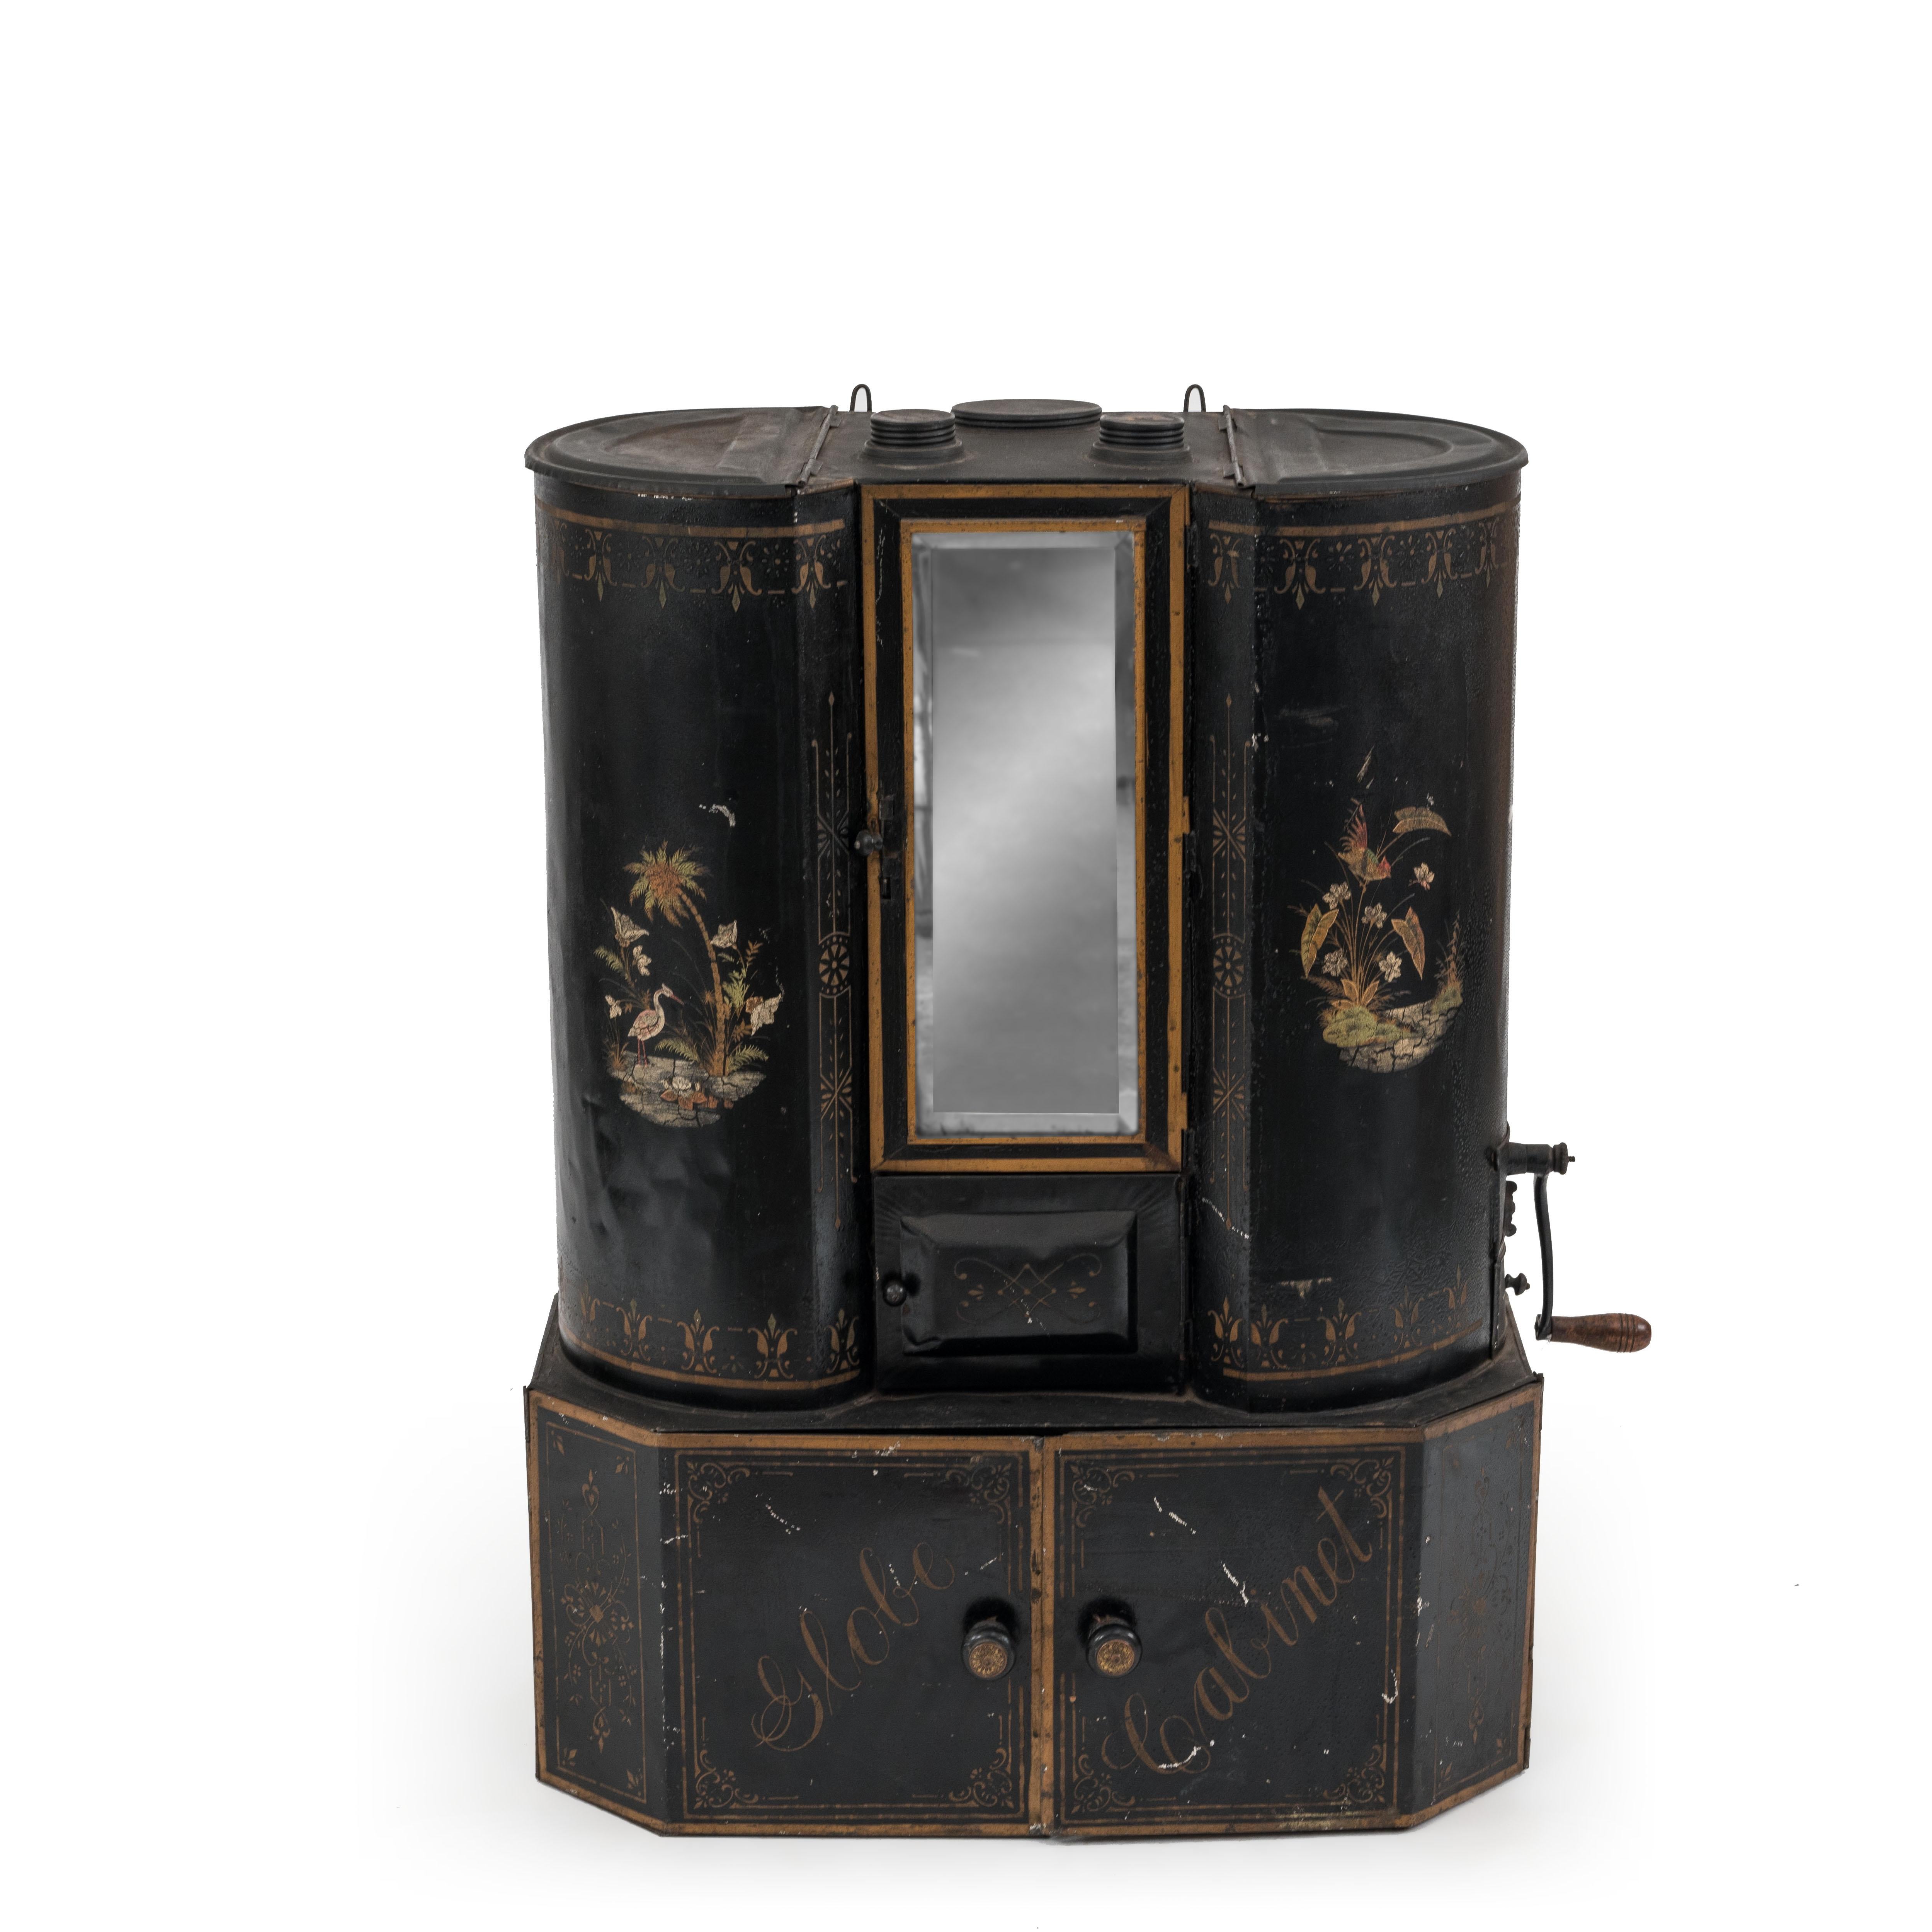 Amerikanischer viktorianischer Gewürzschrank mit Spiegel, Mehlsieb und Kaffeemühle, mit schwarzem Zinn verziert.